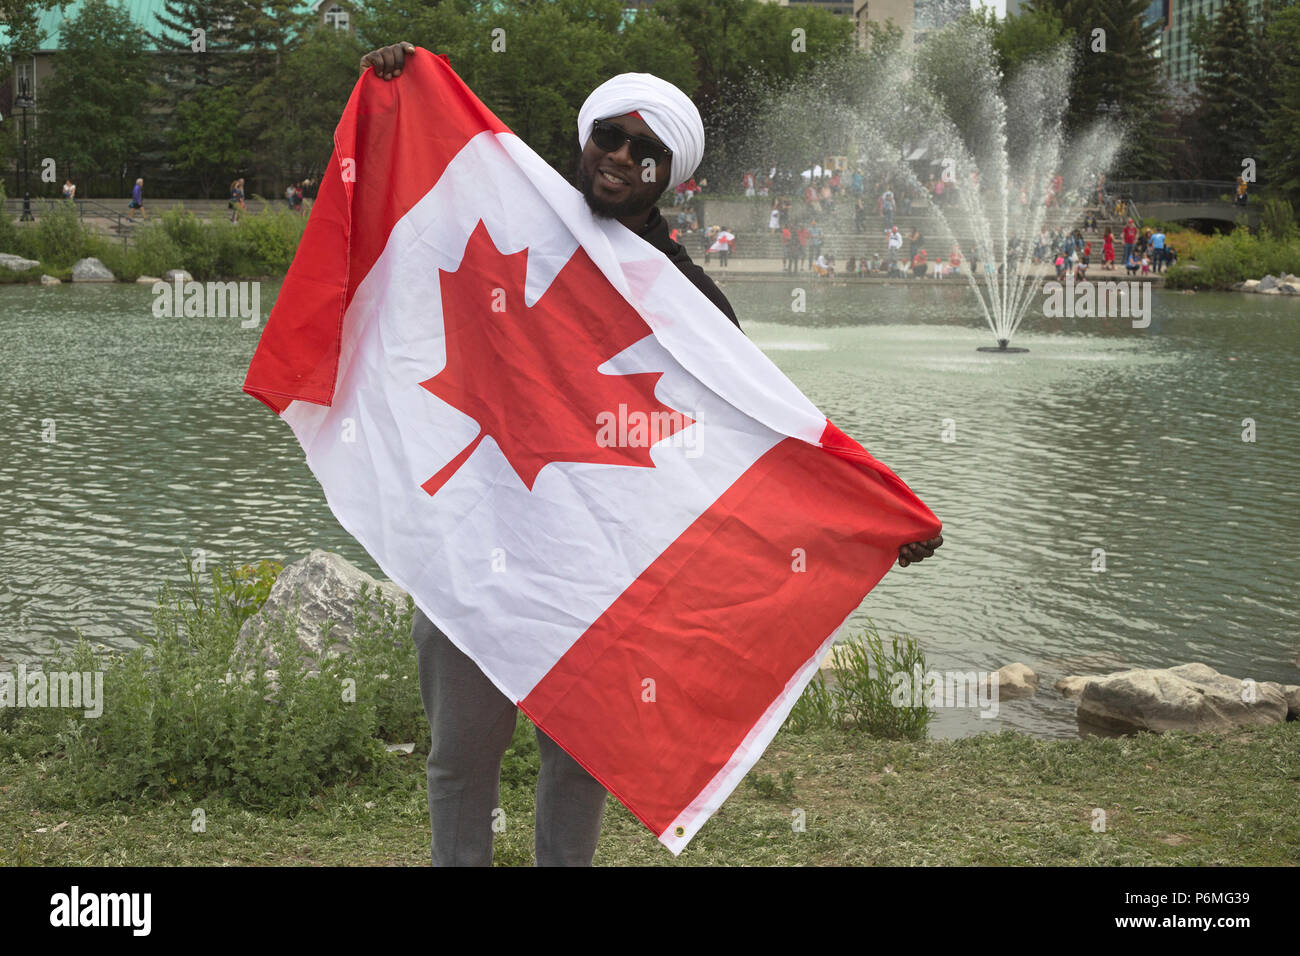 Kanada-Tag. Der Mann hält die kanadische Flagge, nachdem er Turban, eh?, eine Veranstaltung der World Sikh Organization im Prince's Island Park in Calgary am Canada Day, festgebunden hat. Die Menschen wurden eingeladen, einen roten oder weißen Turban um ihren Kopf wickeln zu lassen und mehr über die Sikh-Kultur zu erfahren. Rosanne Tackaberry/Alamy Live News Stockfoto